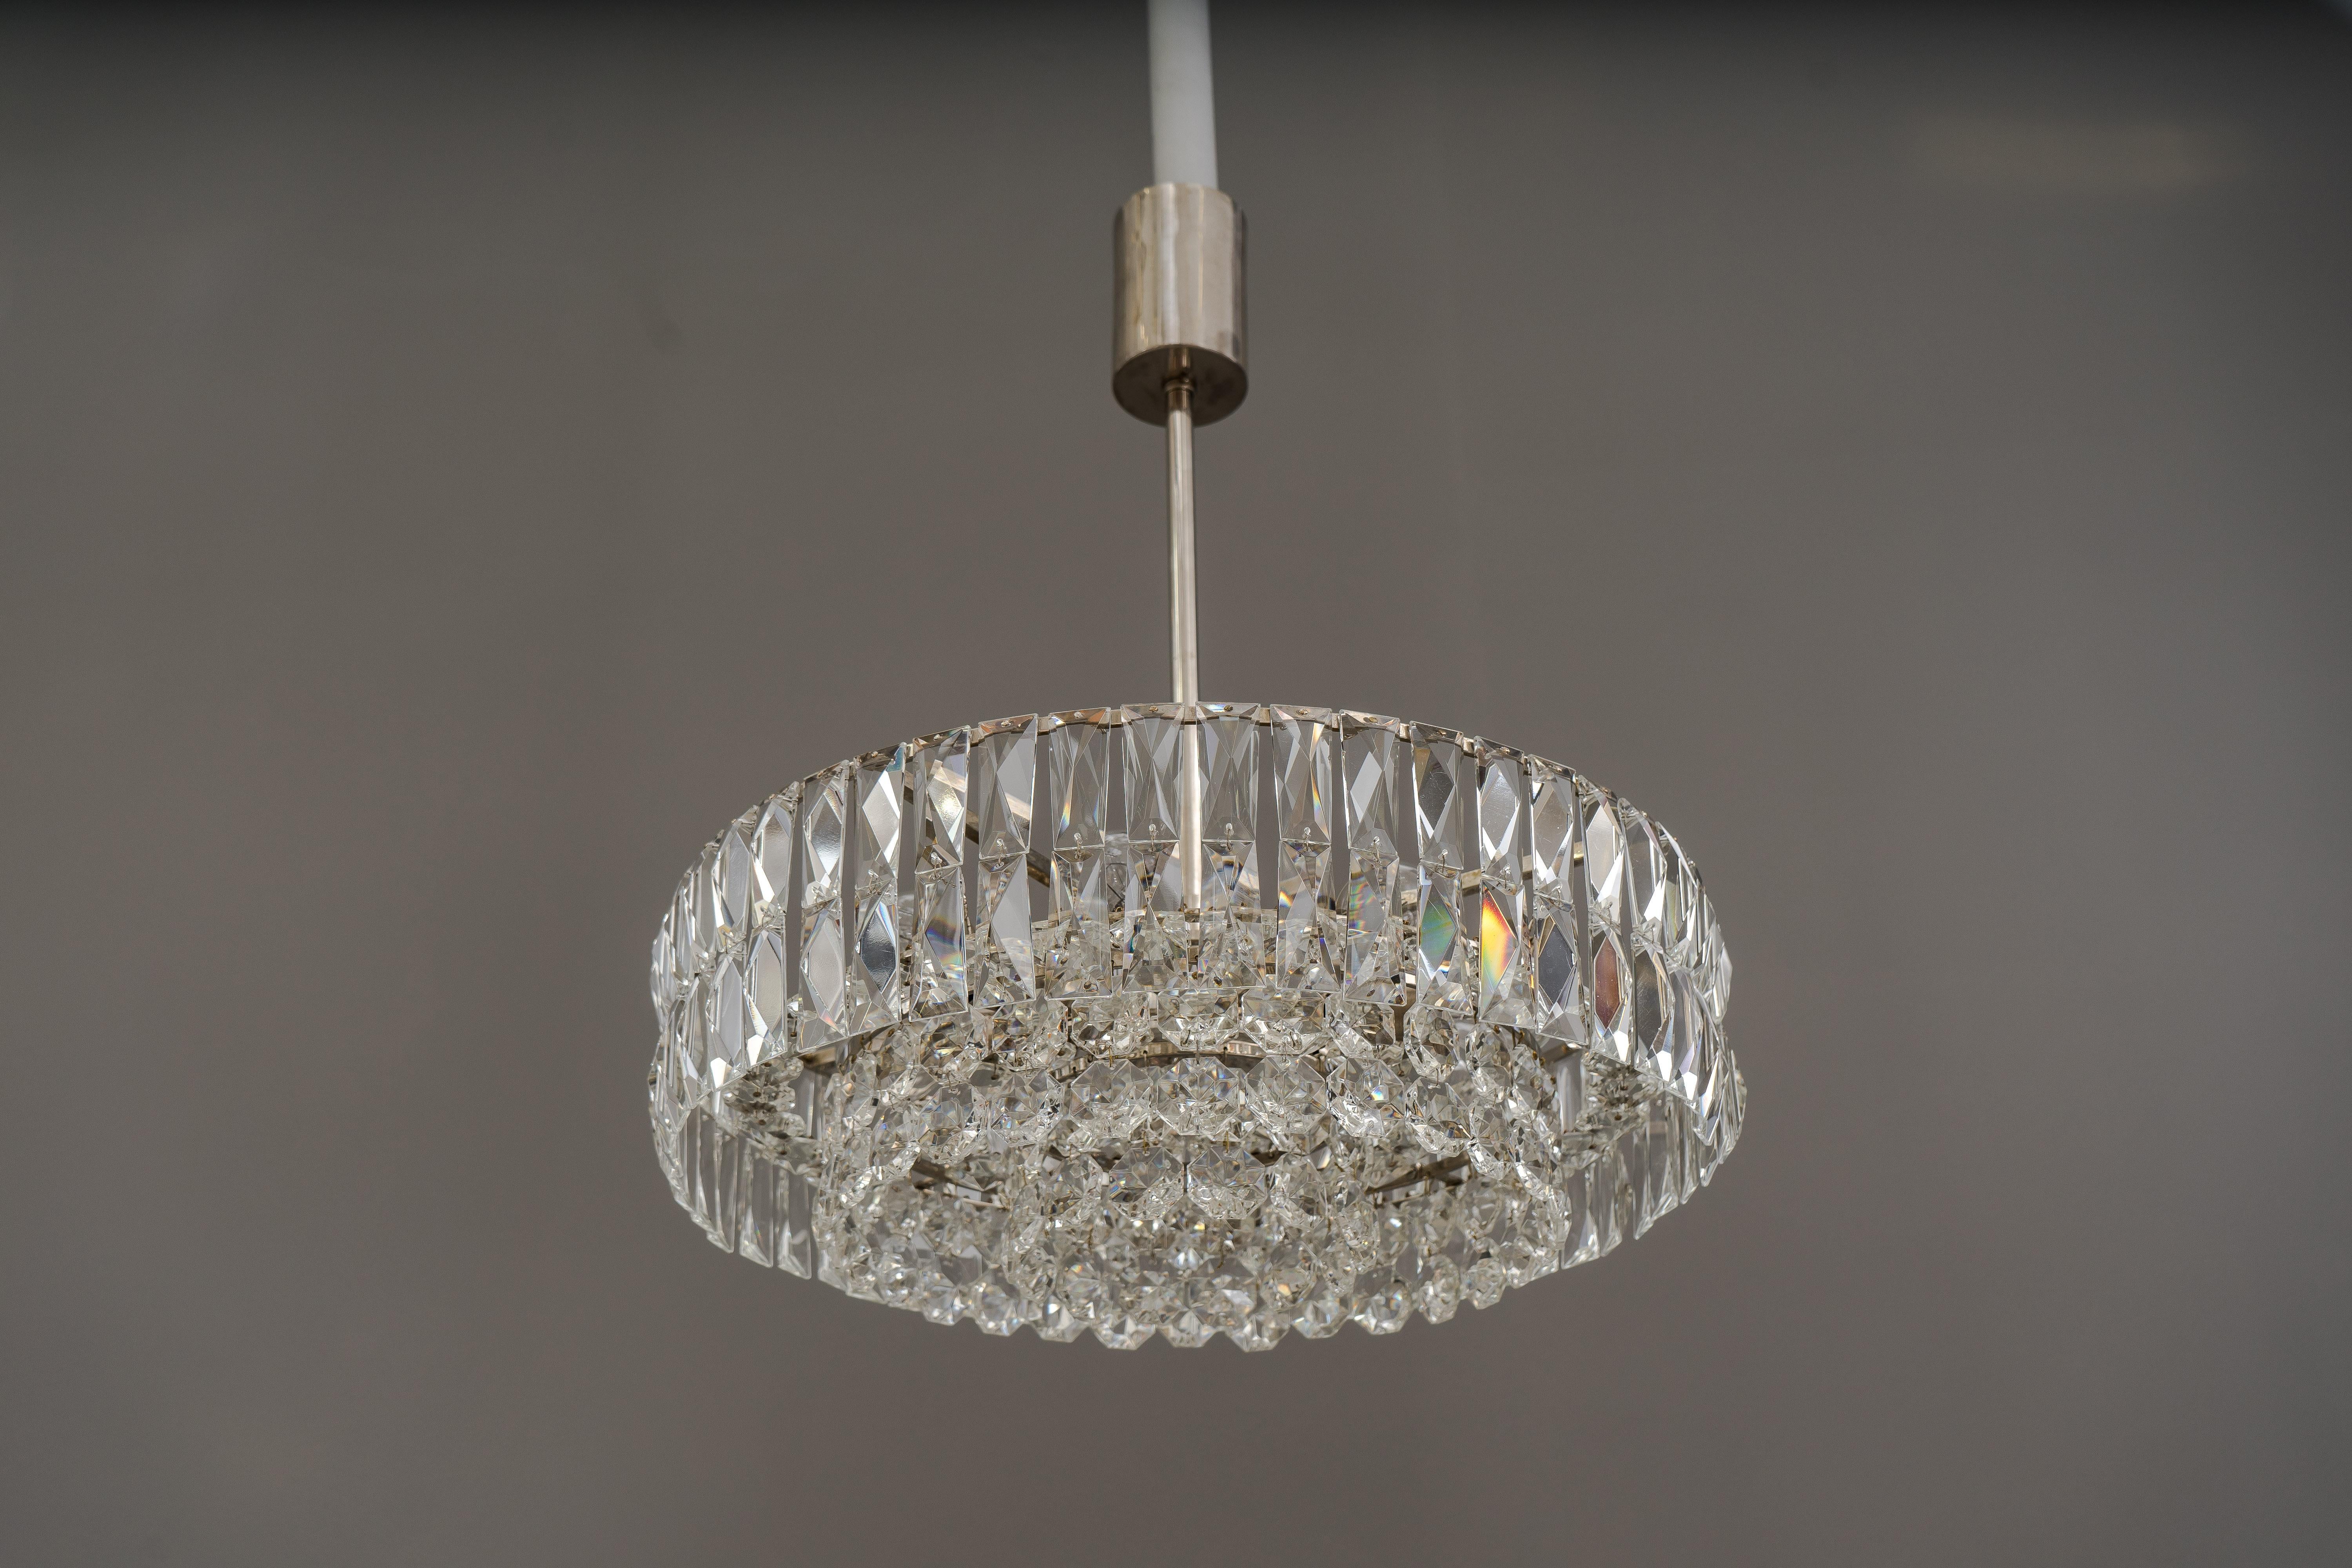 Bakalowits crystal chandelier, circa 1960s
Original condition.
     